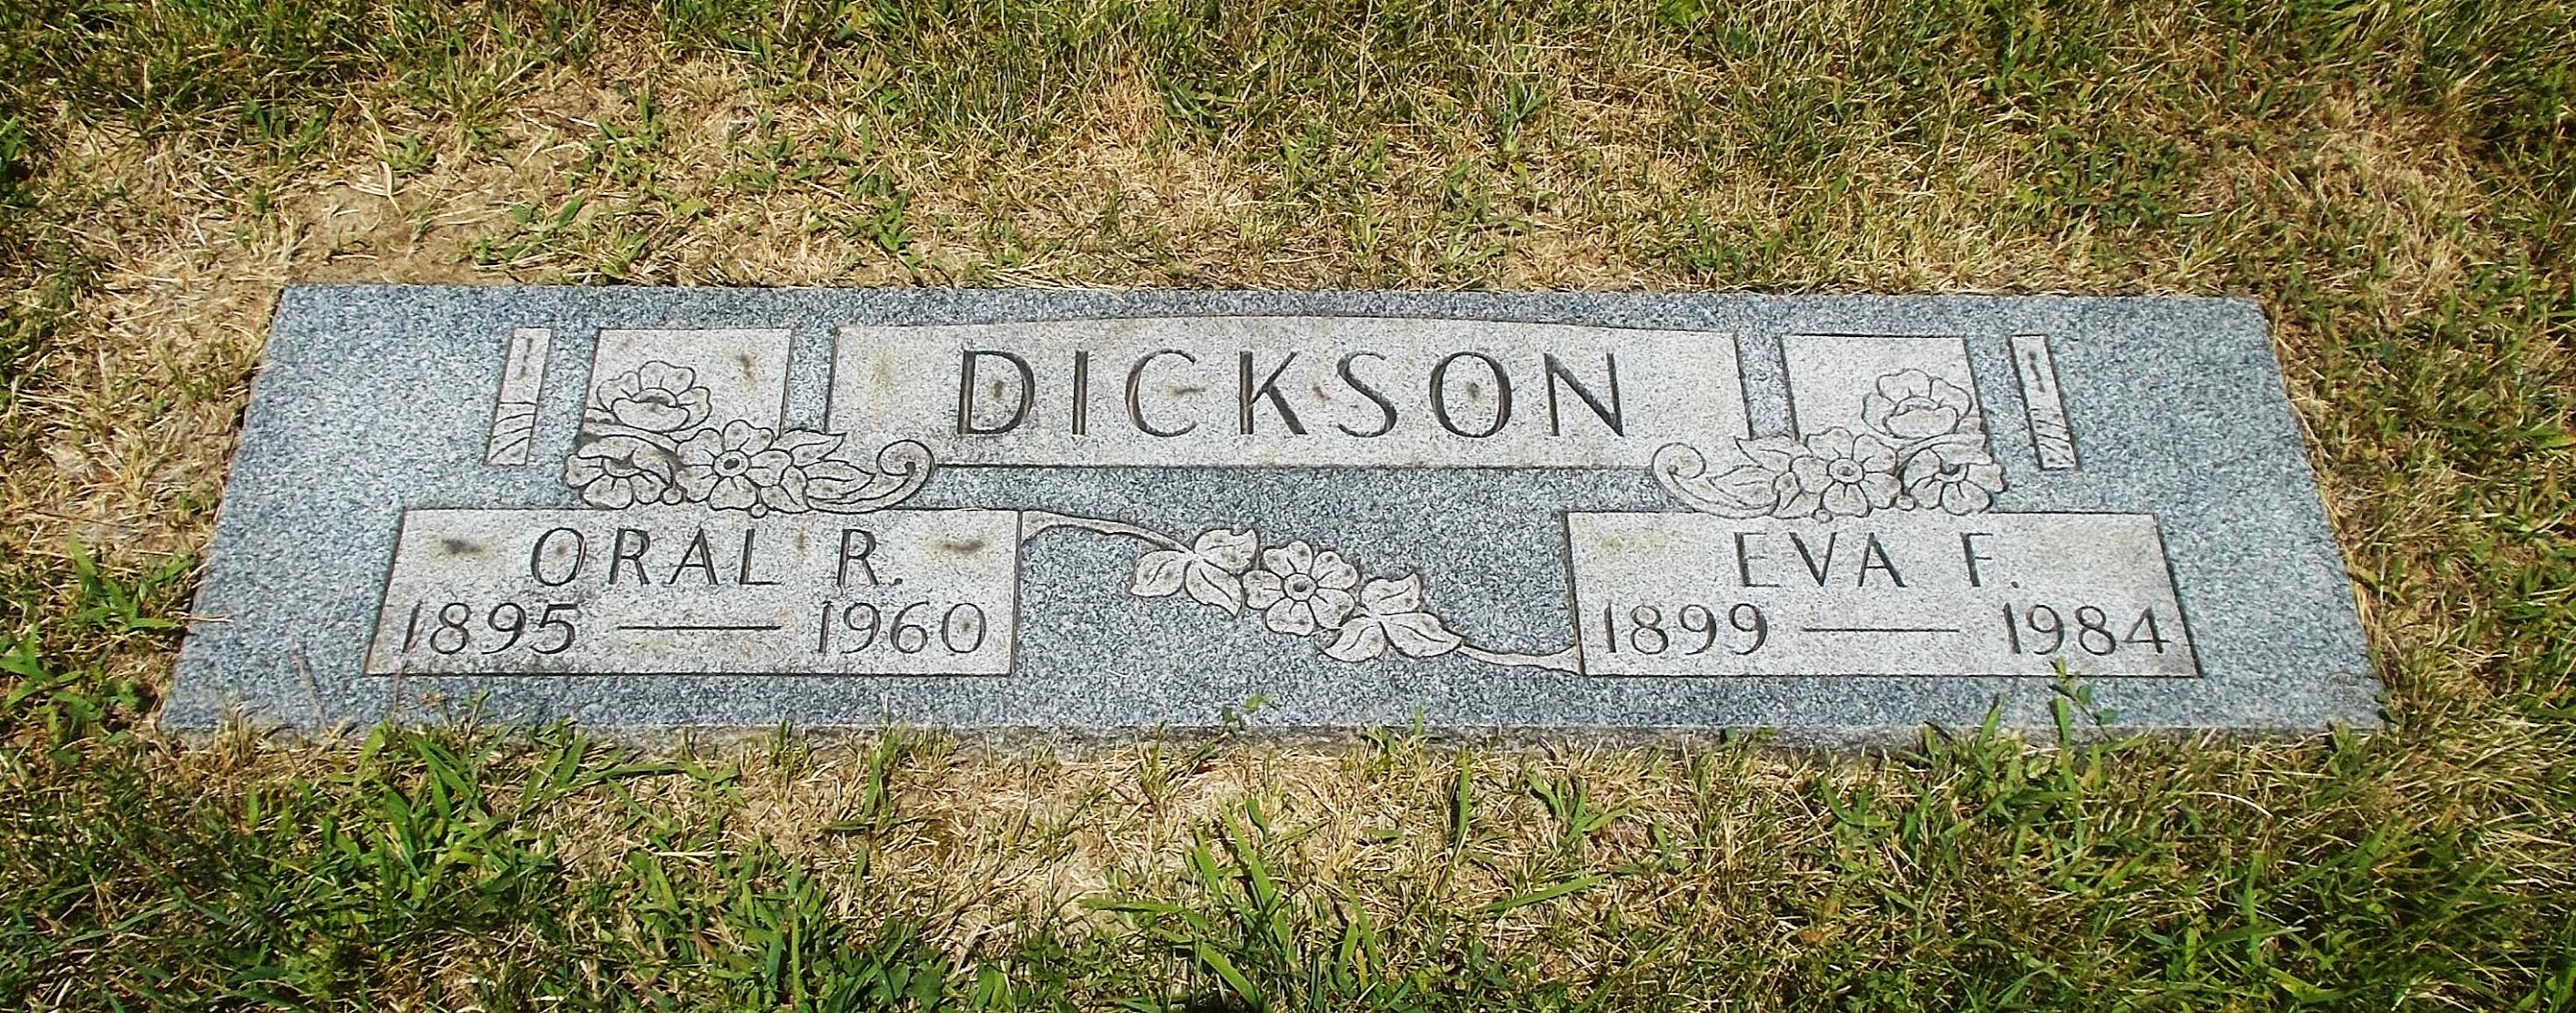 Oral R Dickson